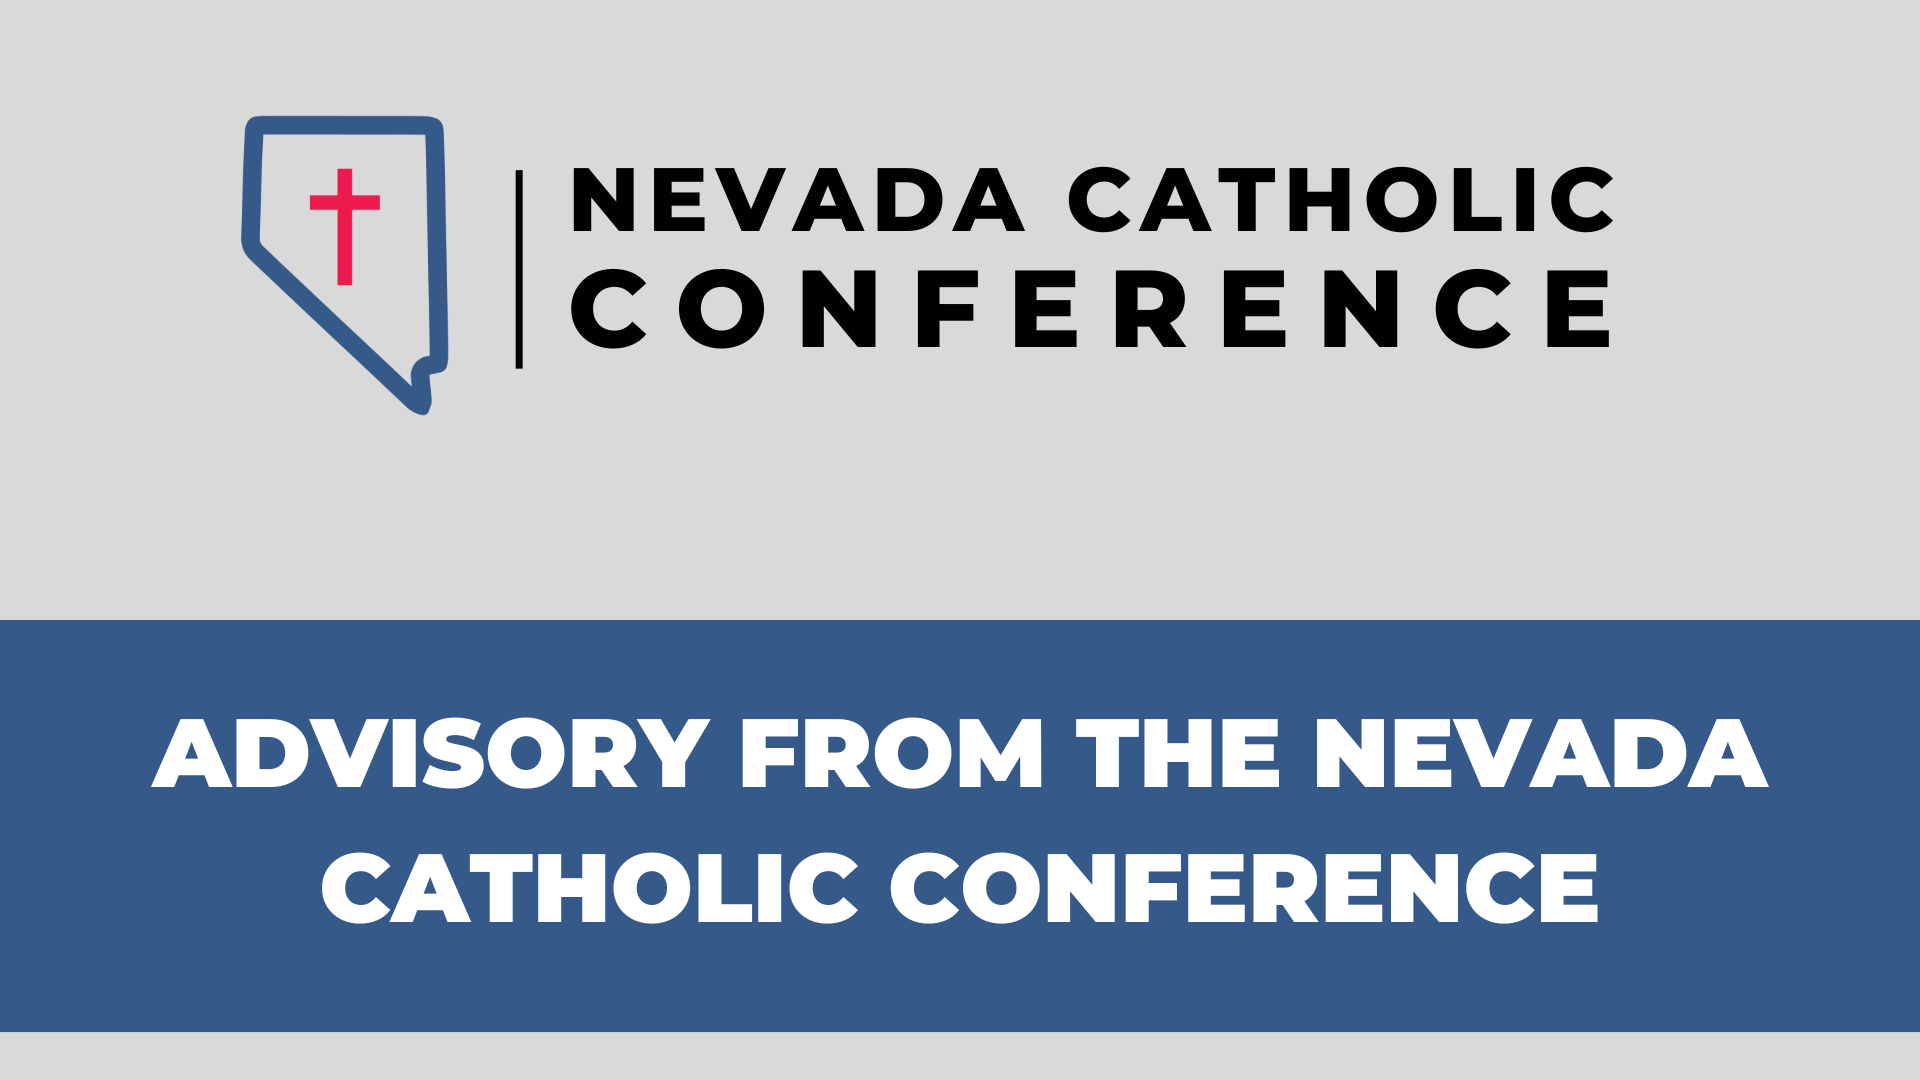 Nevada Catholic Conference Advisory